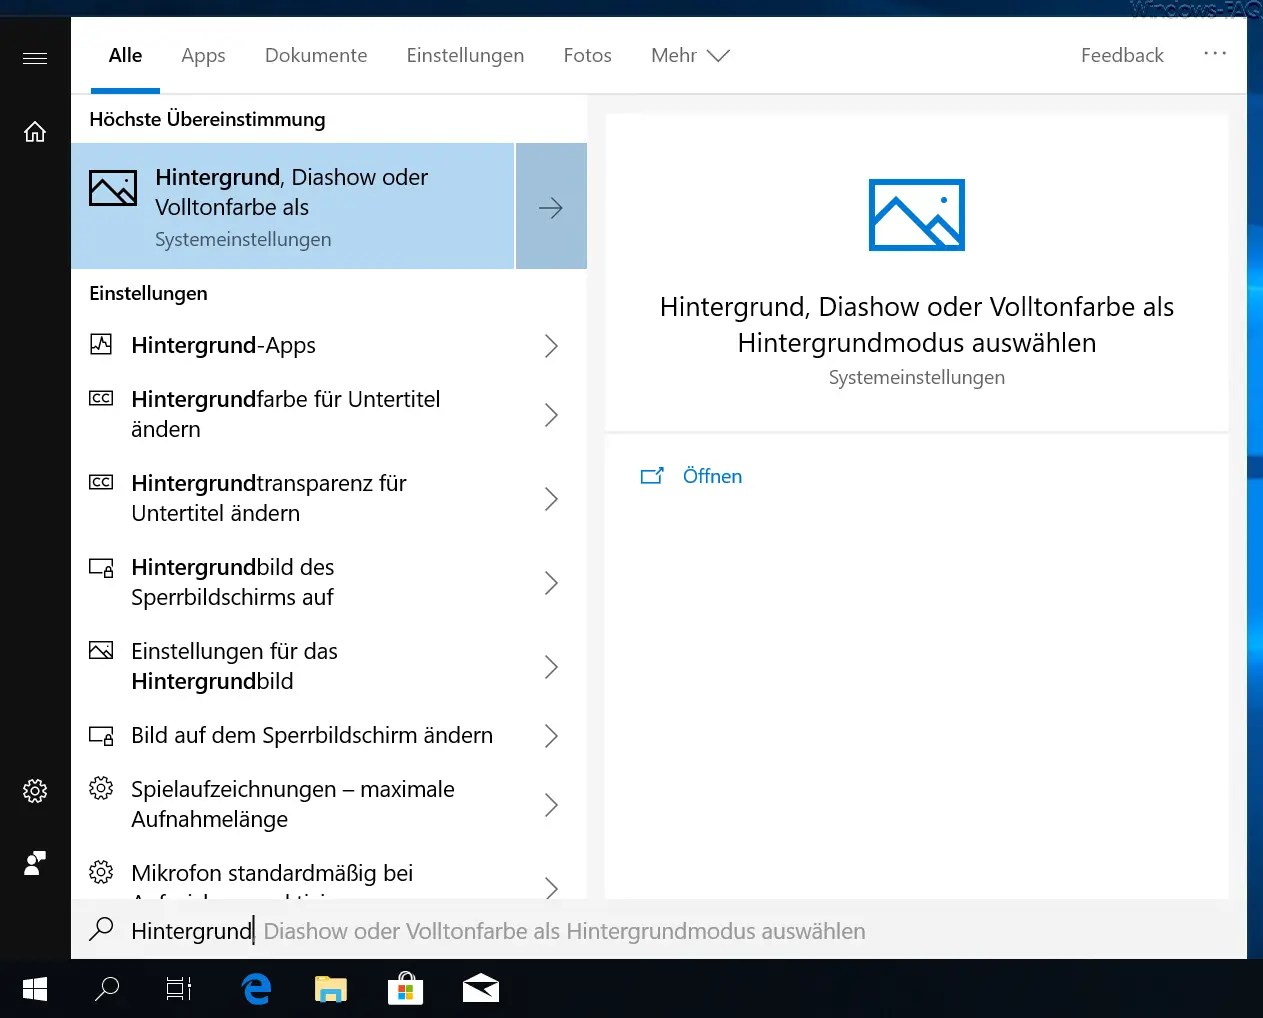 Windows 10 start menu Cortana without search suggestions